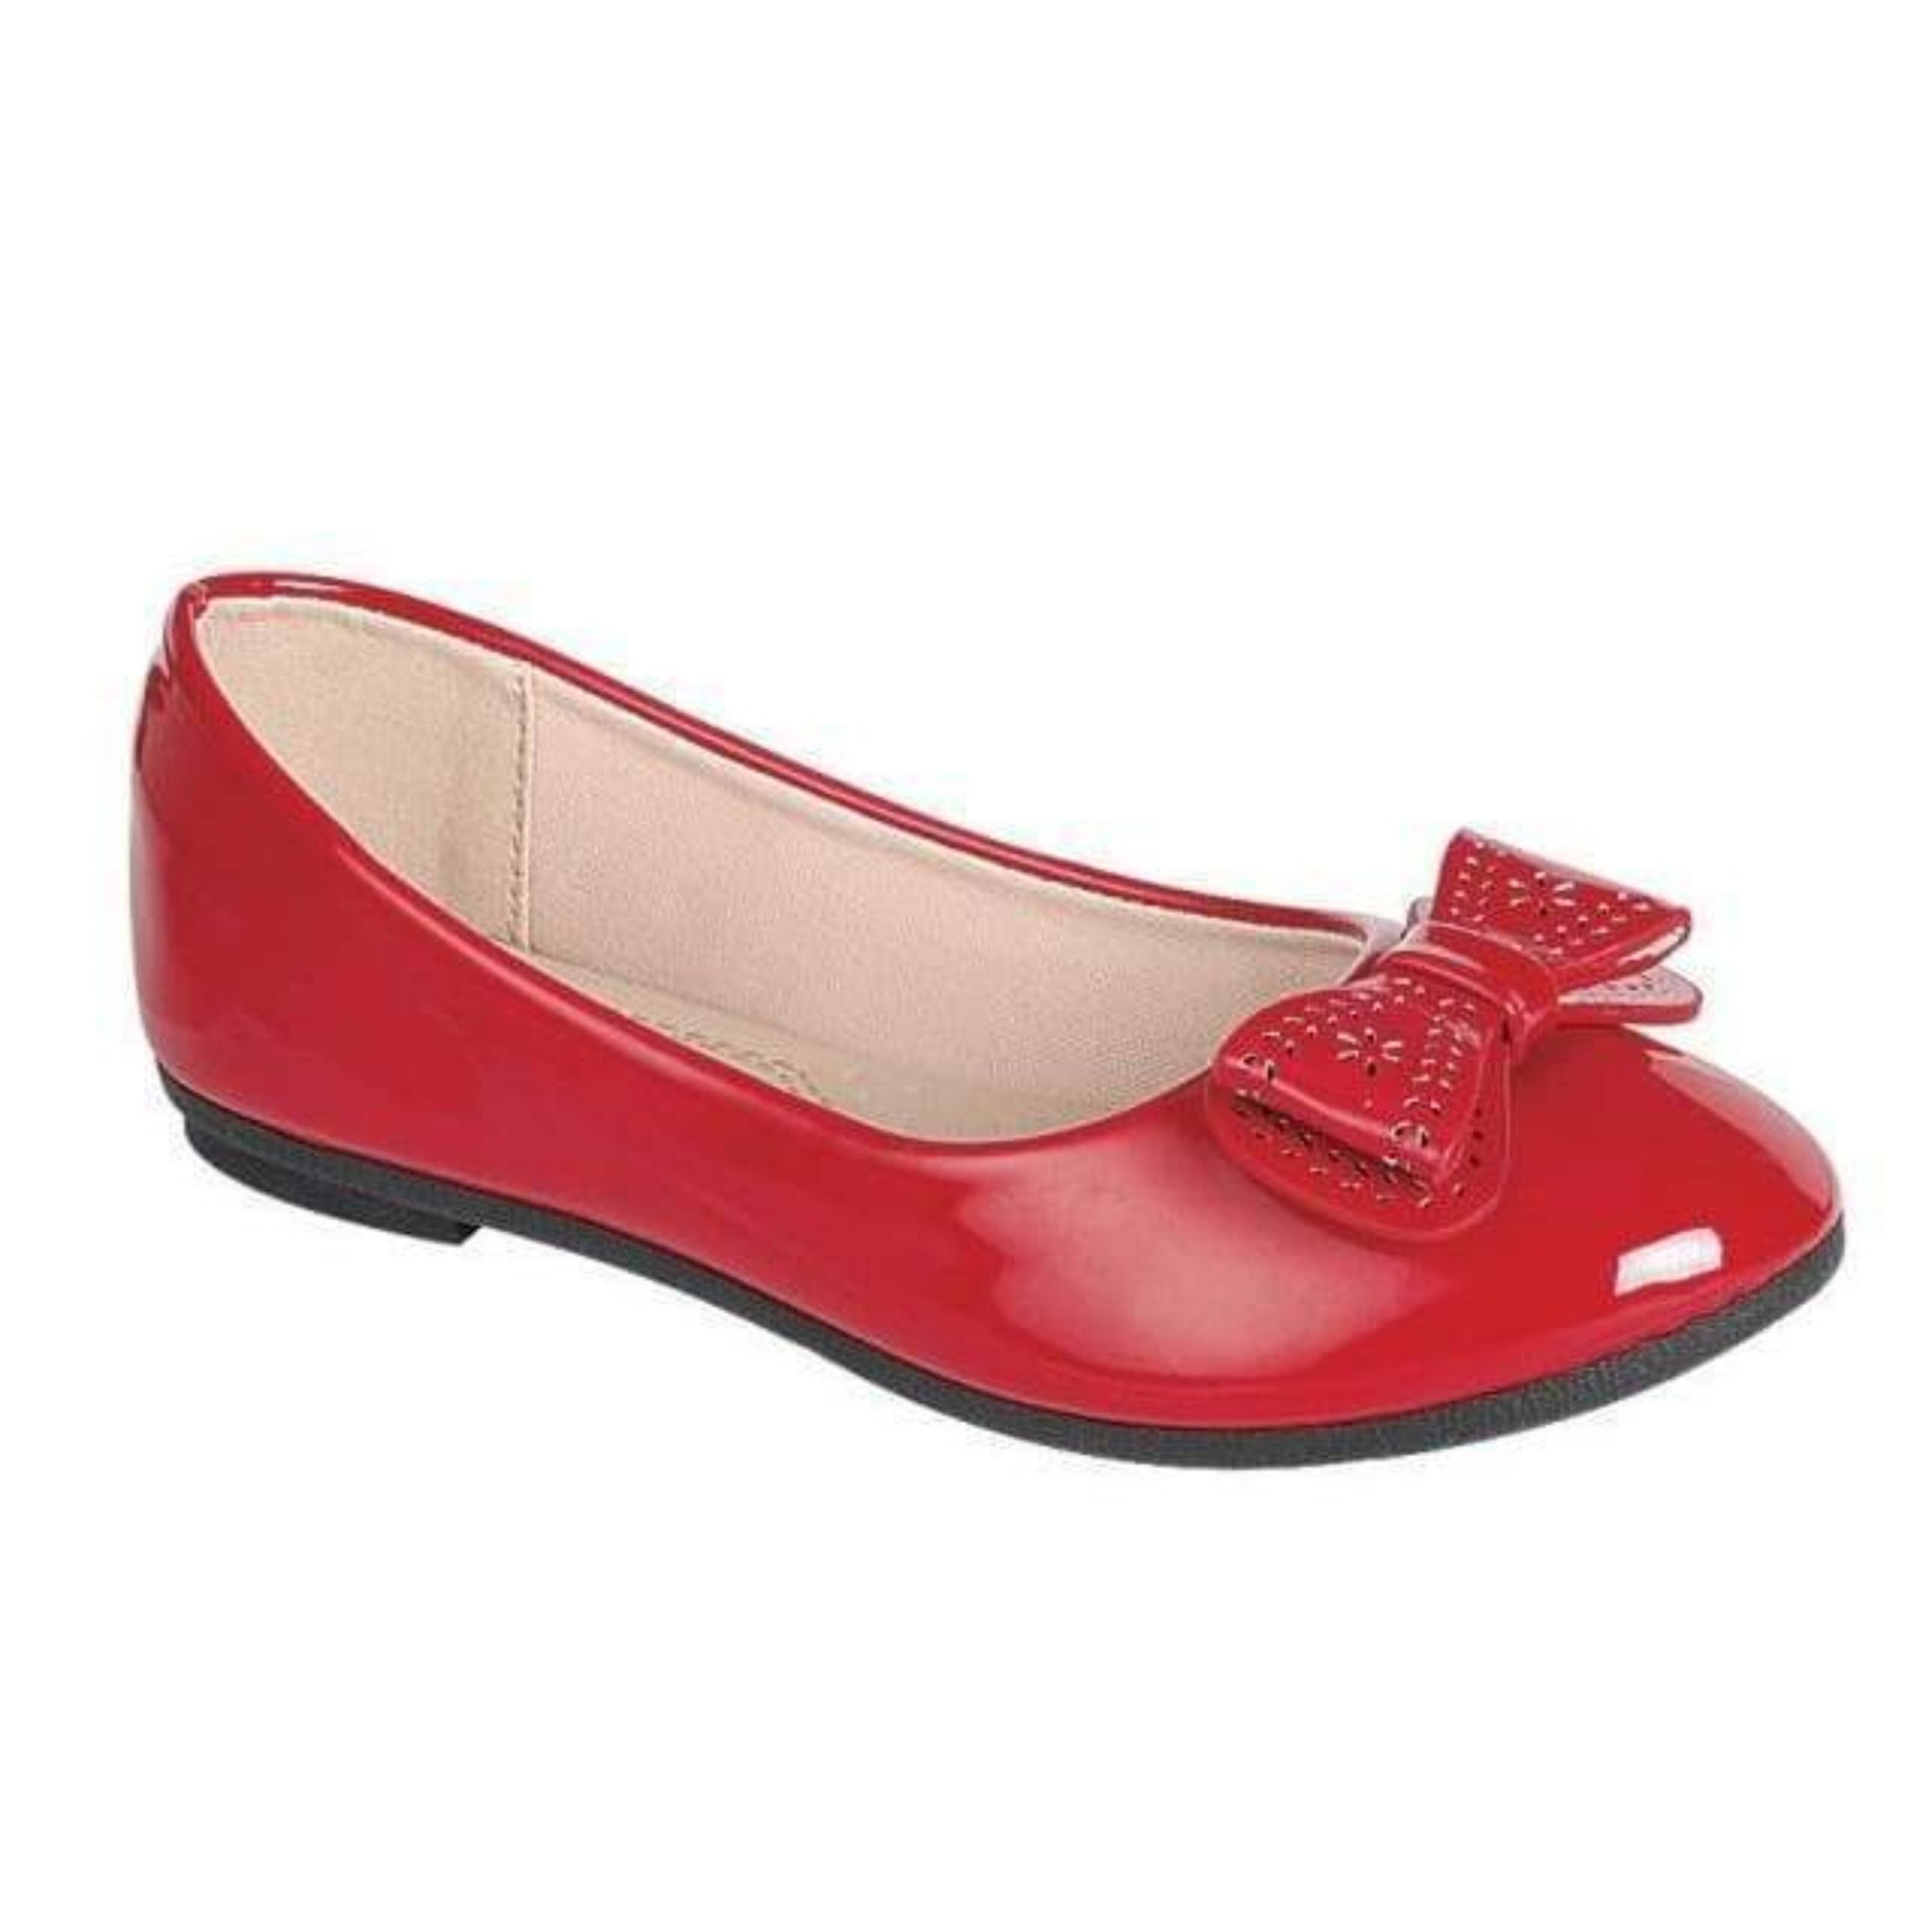 EntireCares4U - KL Kids Girl Red Shoes